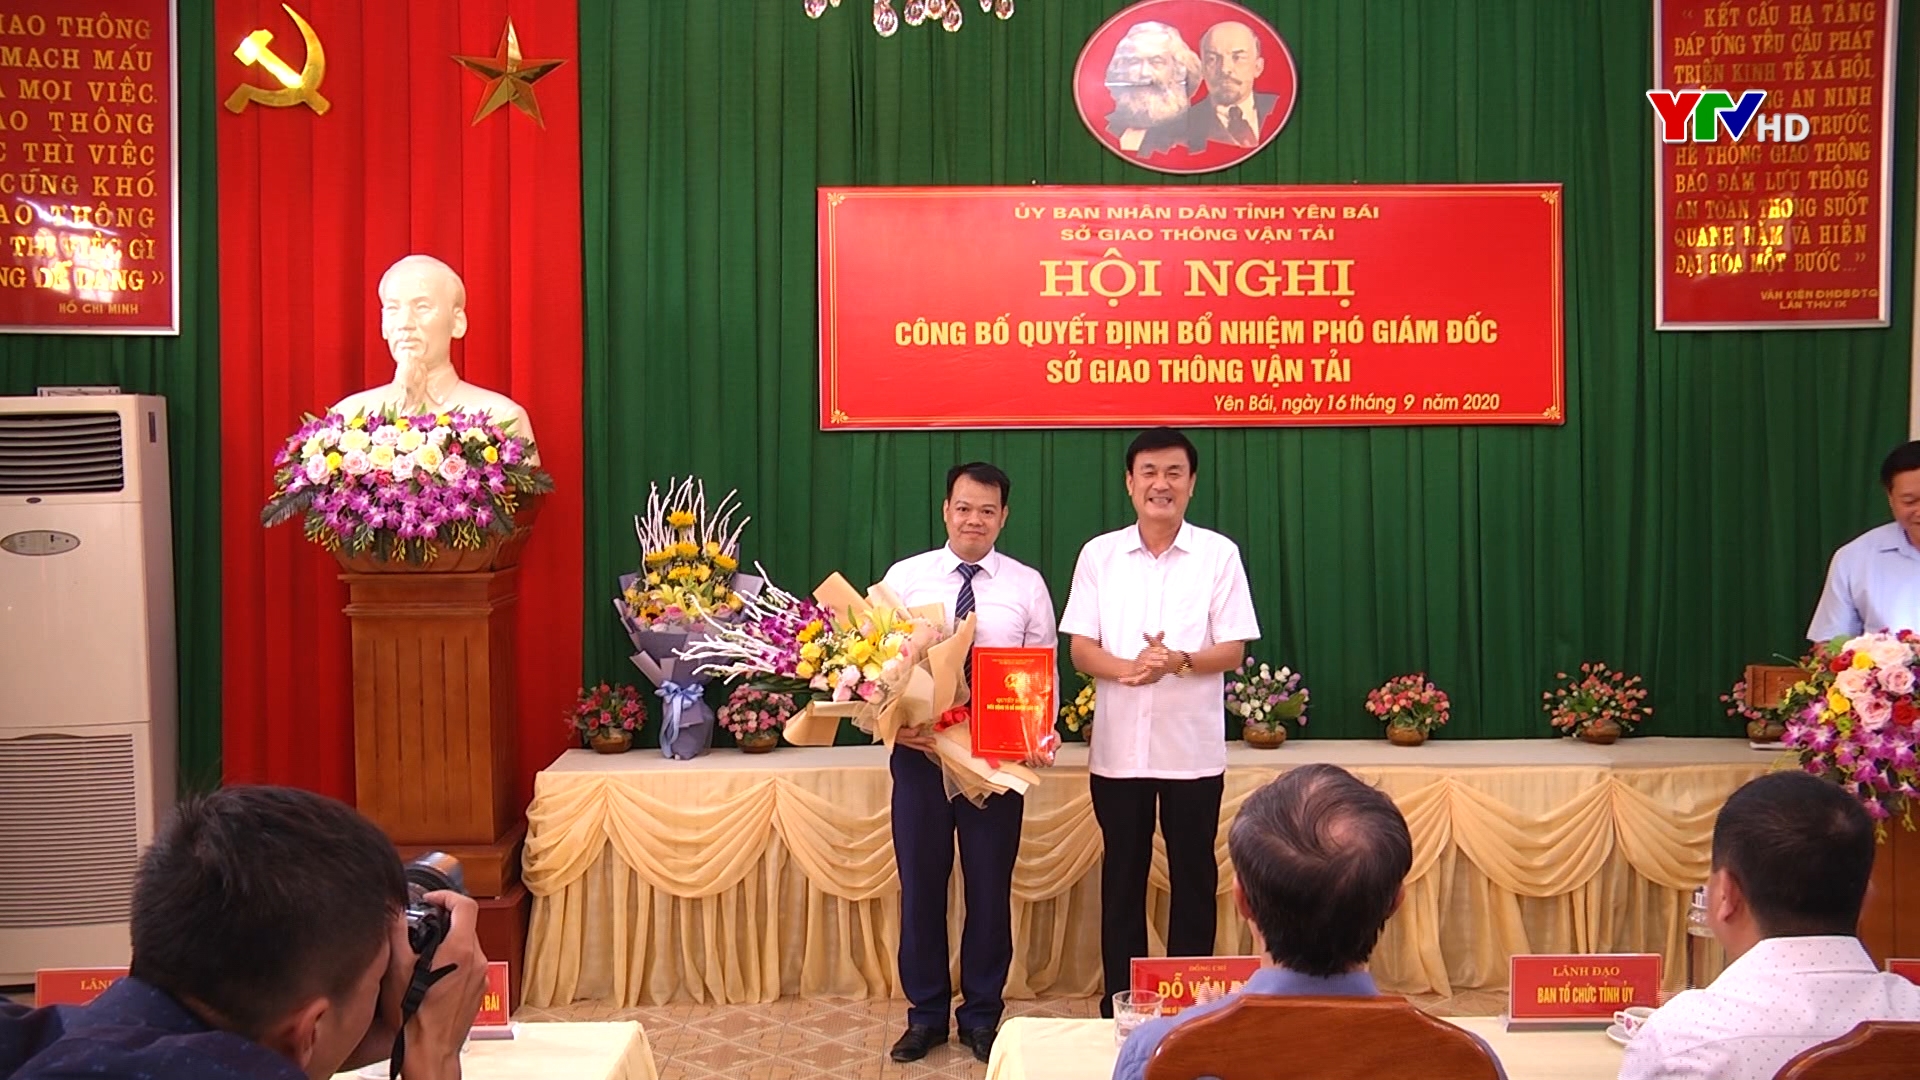 Đồng chí Đào Ngọc Hùng được bổ nhiệm giữ chức Phó Giám đốc Sở Giao thông vận tải Yên Bái